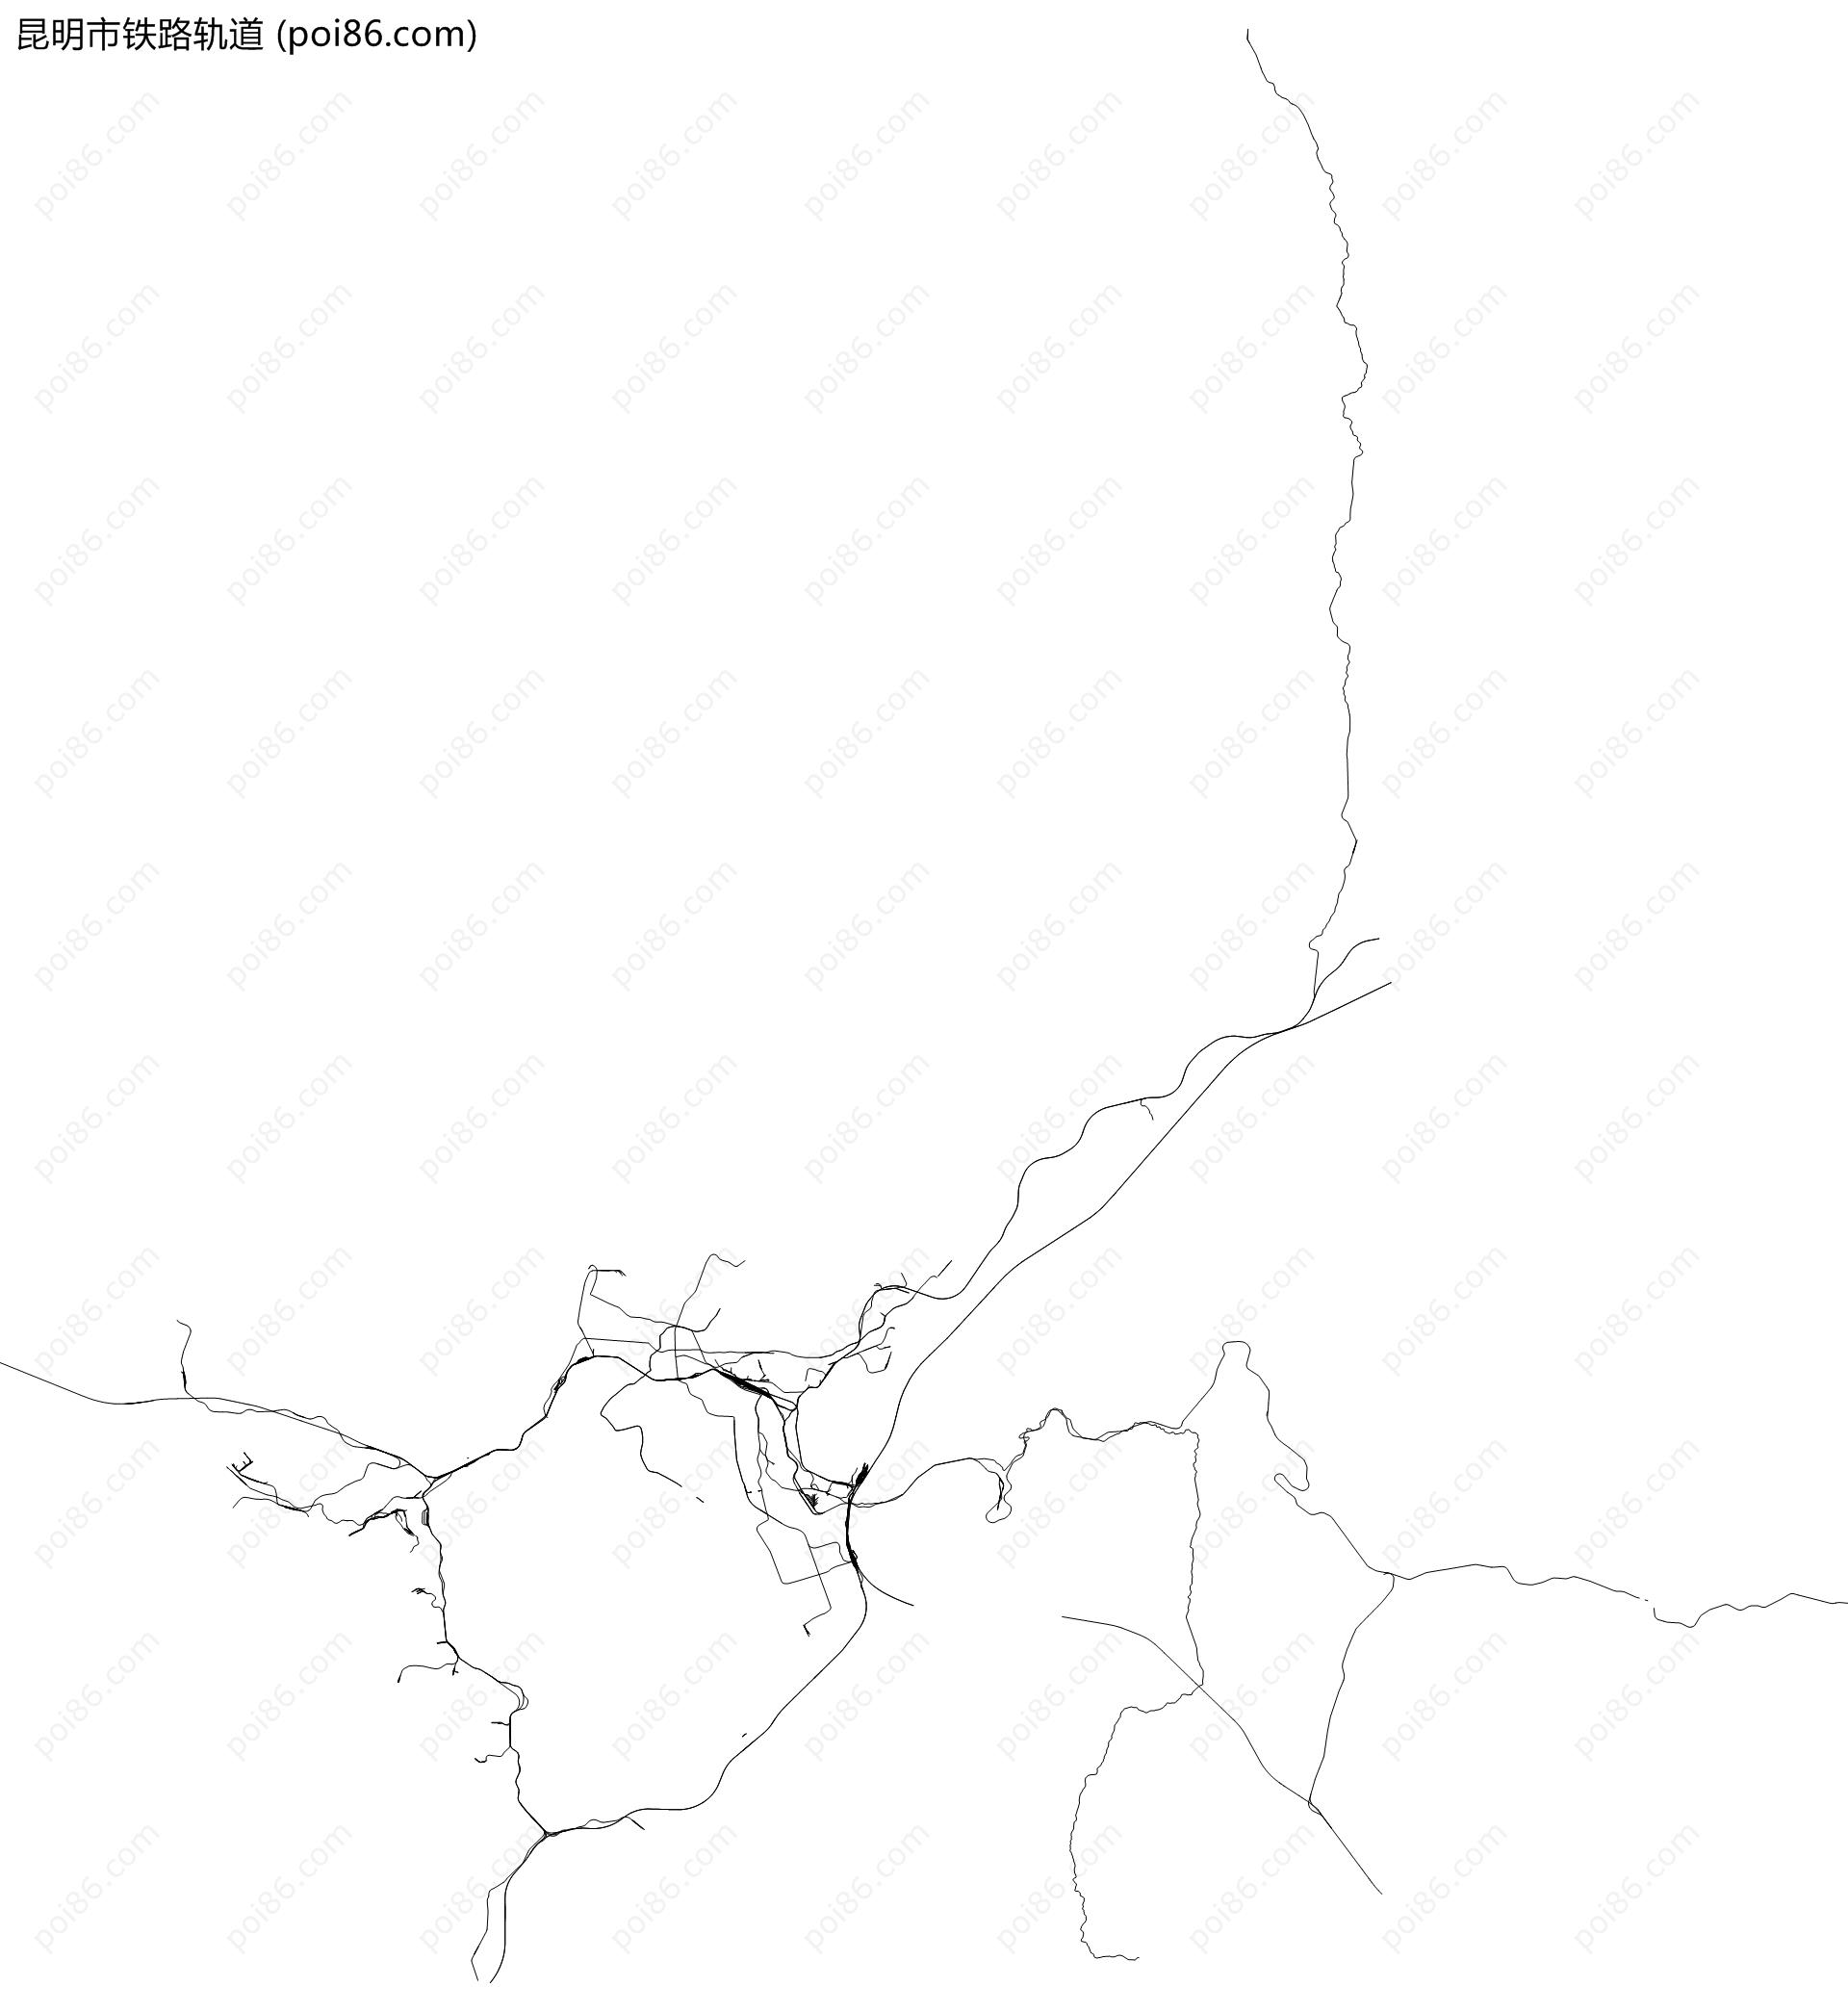 昆明市铁路轨道地图